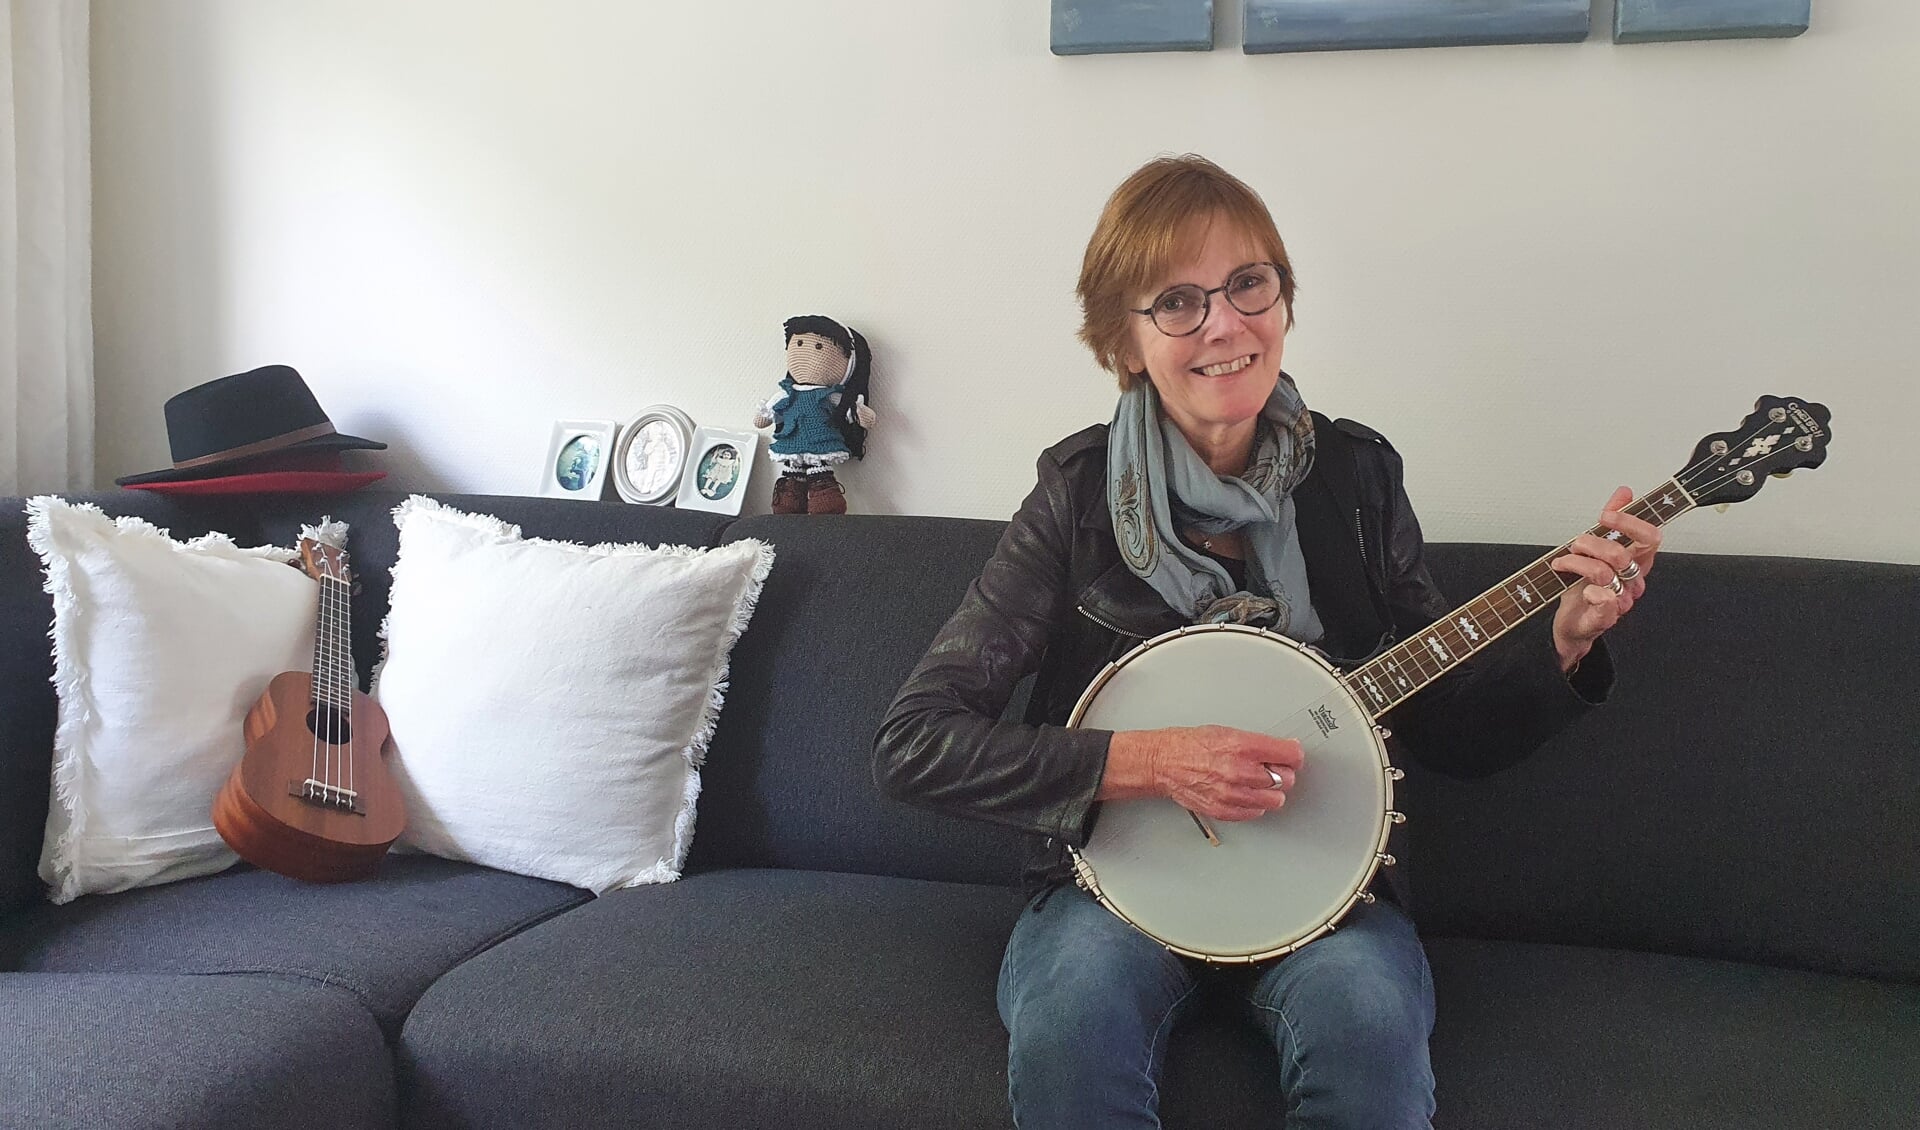 Klaske heeft een passie voor de banjo. 